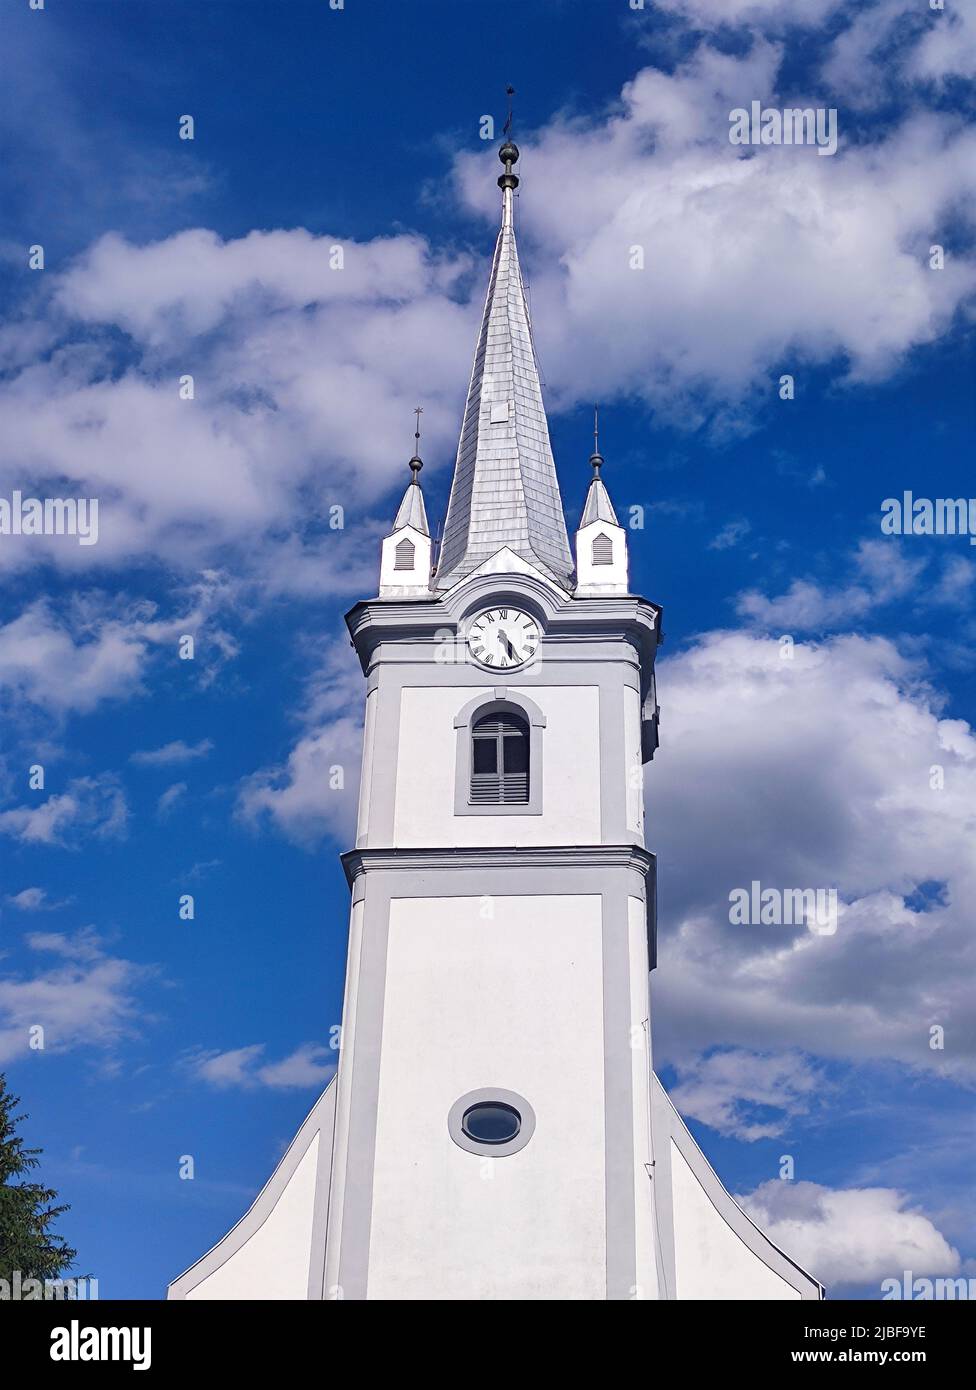 Katholische Kirche und tiefblauer Himmel, Architektur in der Ukraine. Christlicher Tempel mit Uhr Stockfoto